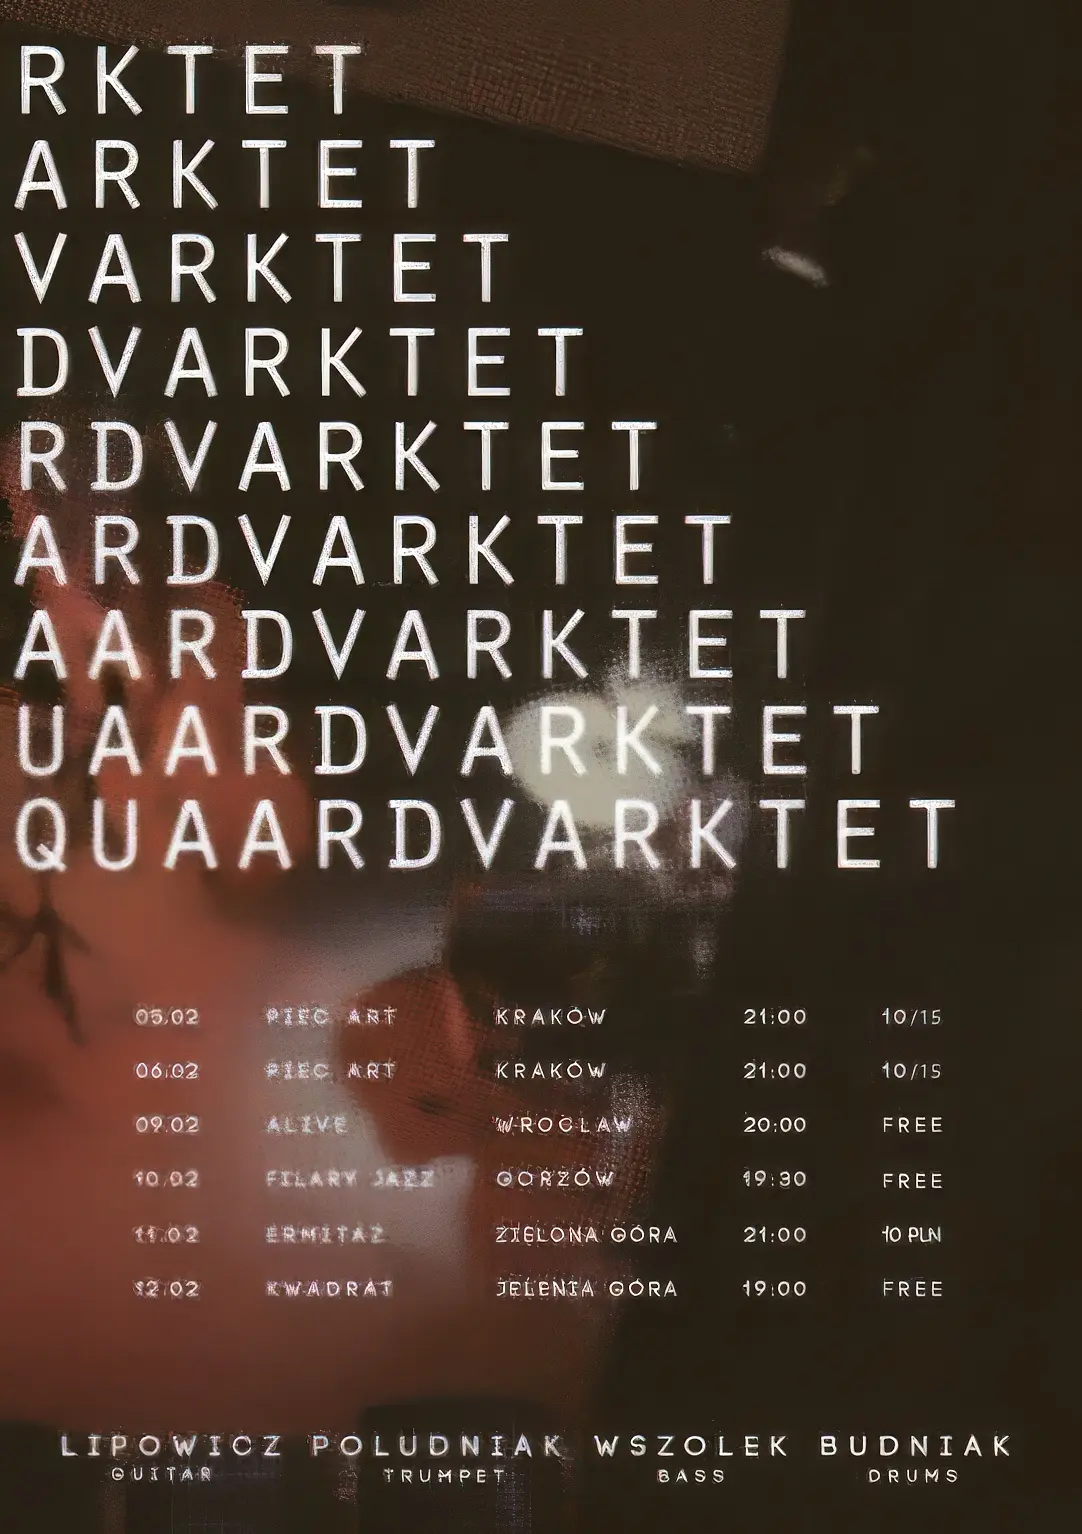 Quaardvarktet - trasa koncertowa bass paweł wszołek quaardvarktet